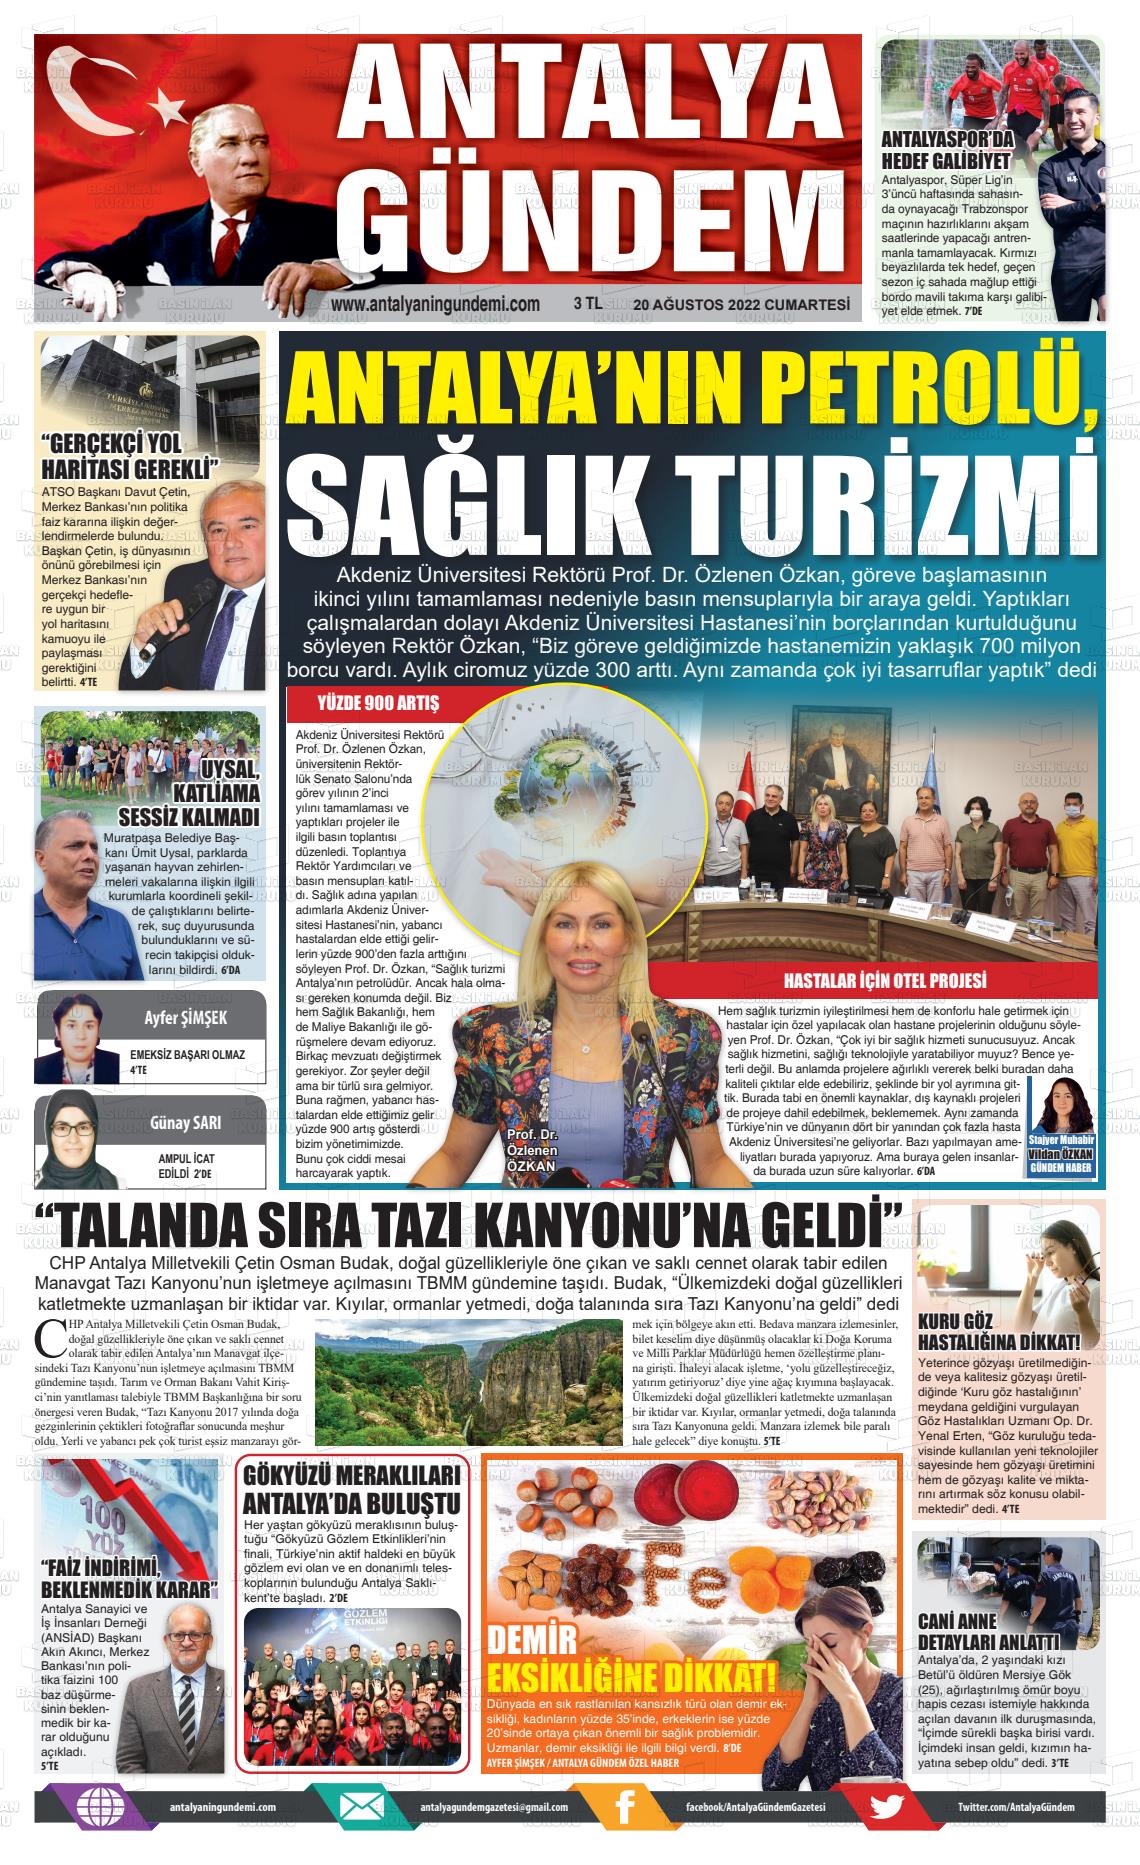 20 Ağustos 2022 Antalya'nın Gündemi Gazete Manşeti